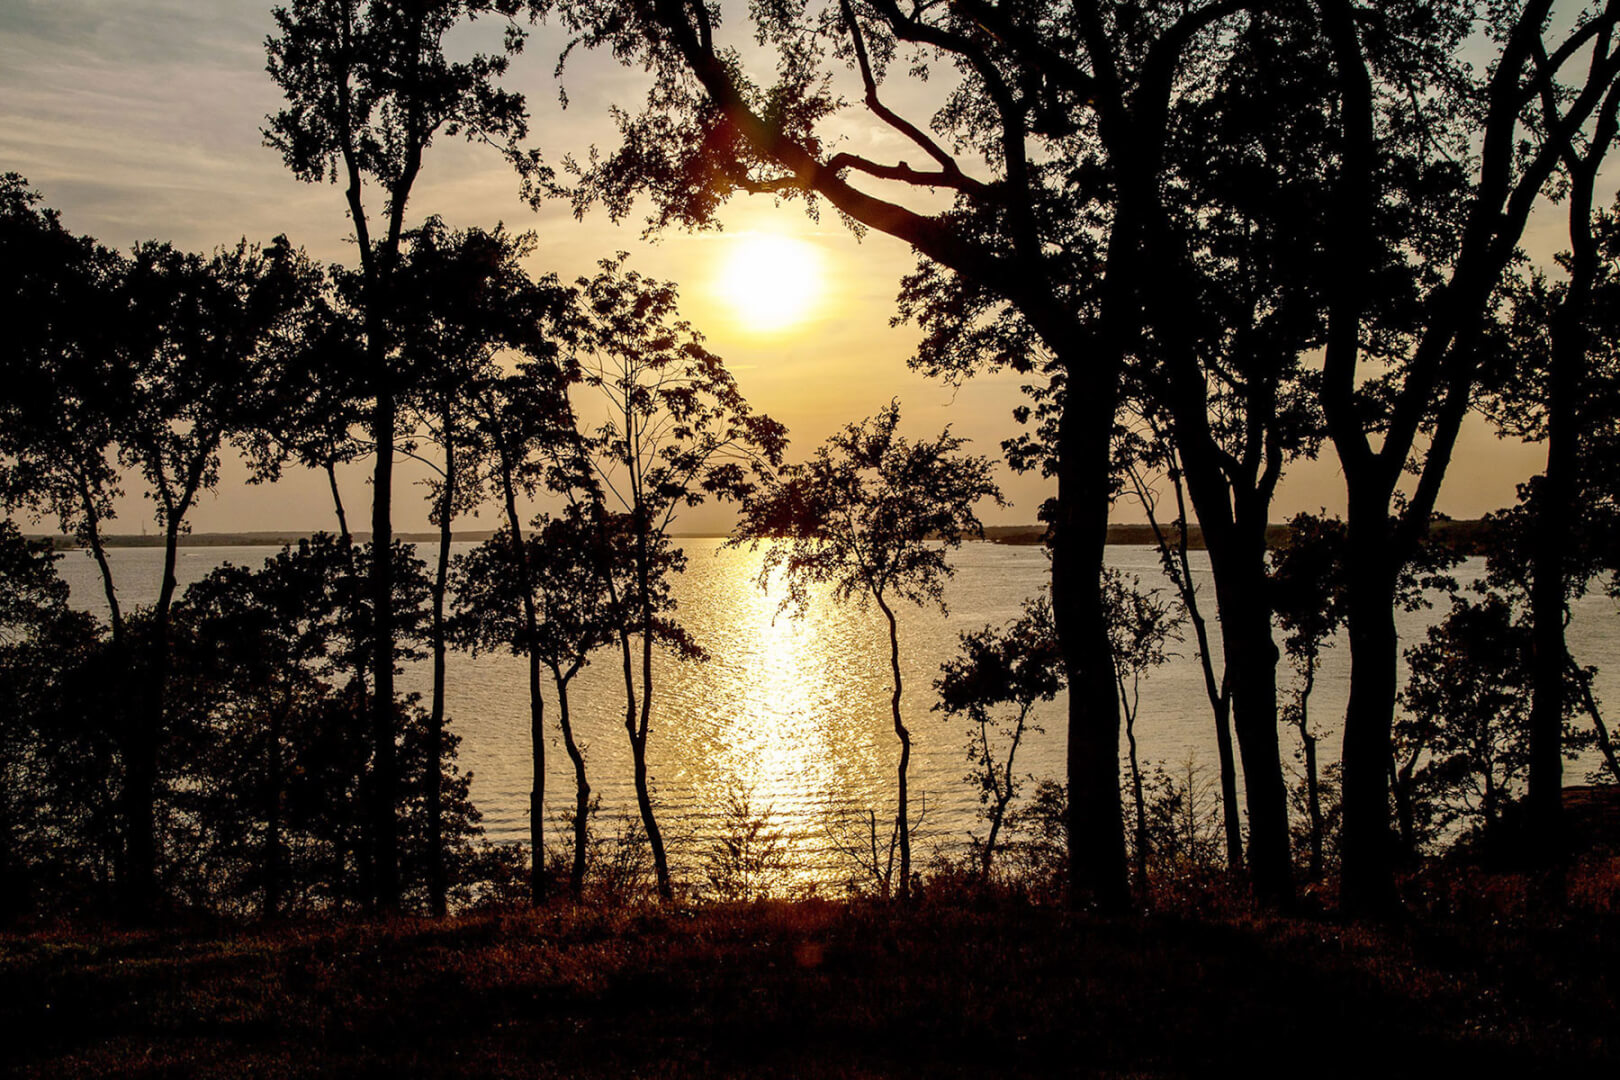 Lake Grapevine near sunset